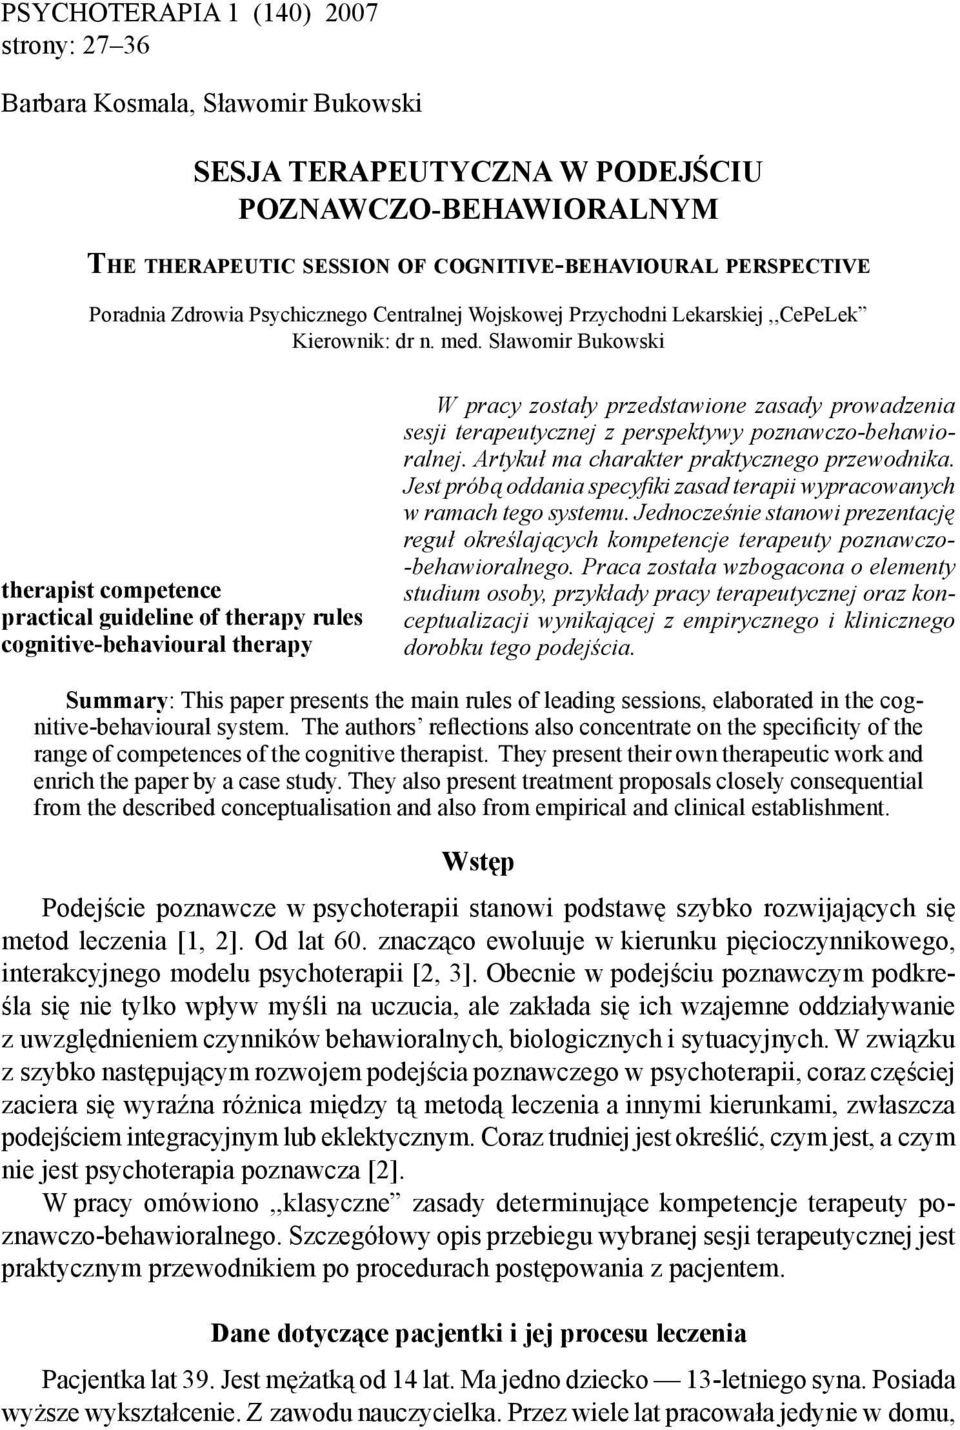 Sławomir Bukowski therapist competence practical guideline of therapy rules cognitive-behavioural therapy W pracy zostały przedstawione zasady prowadzenia sesji terapeutycznej z perspektywy